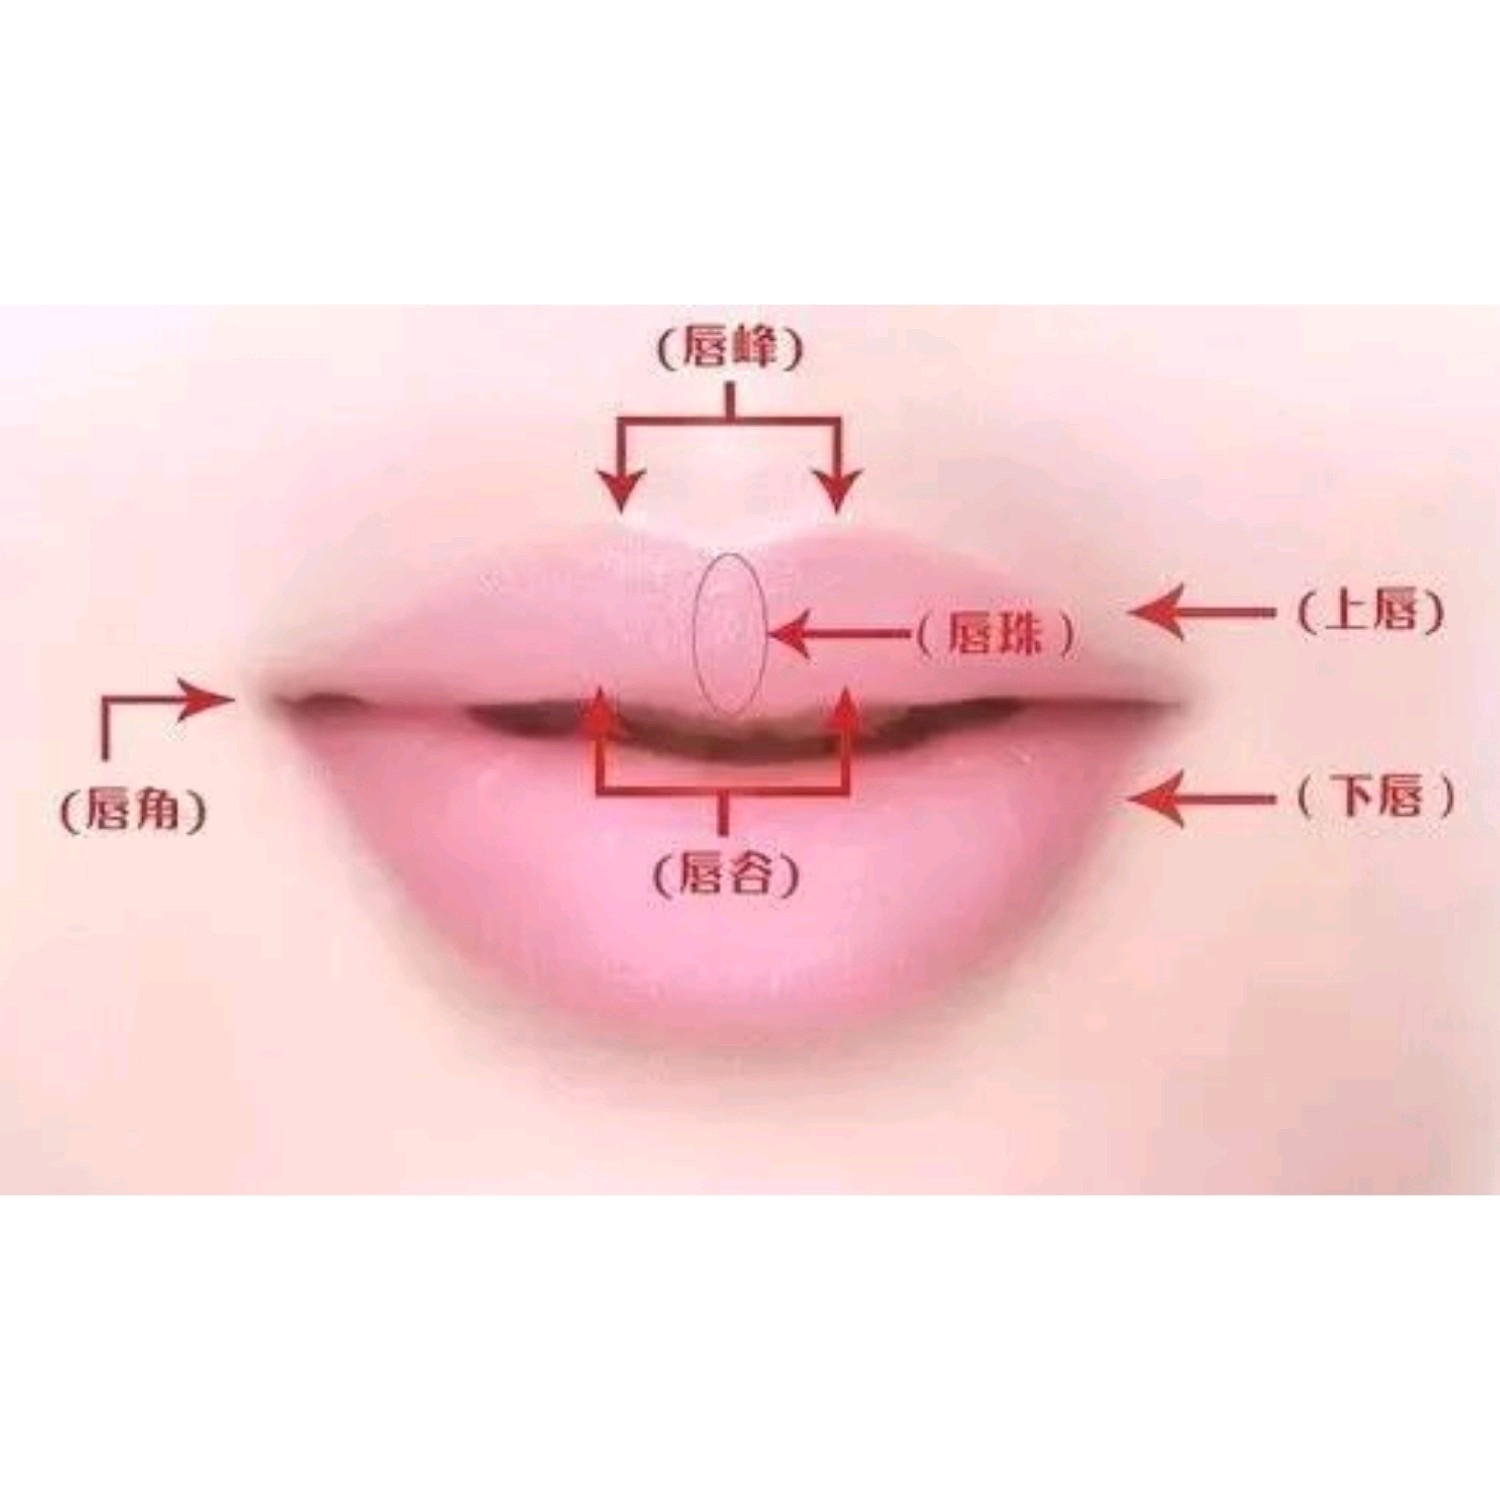 m唇是通过手术方式用于上唇使唇珠突出,增强立体感,目前常见的中号唇